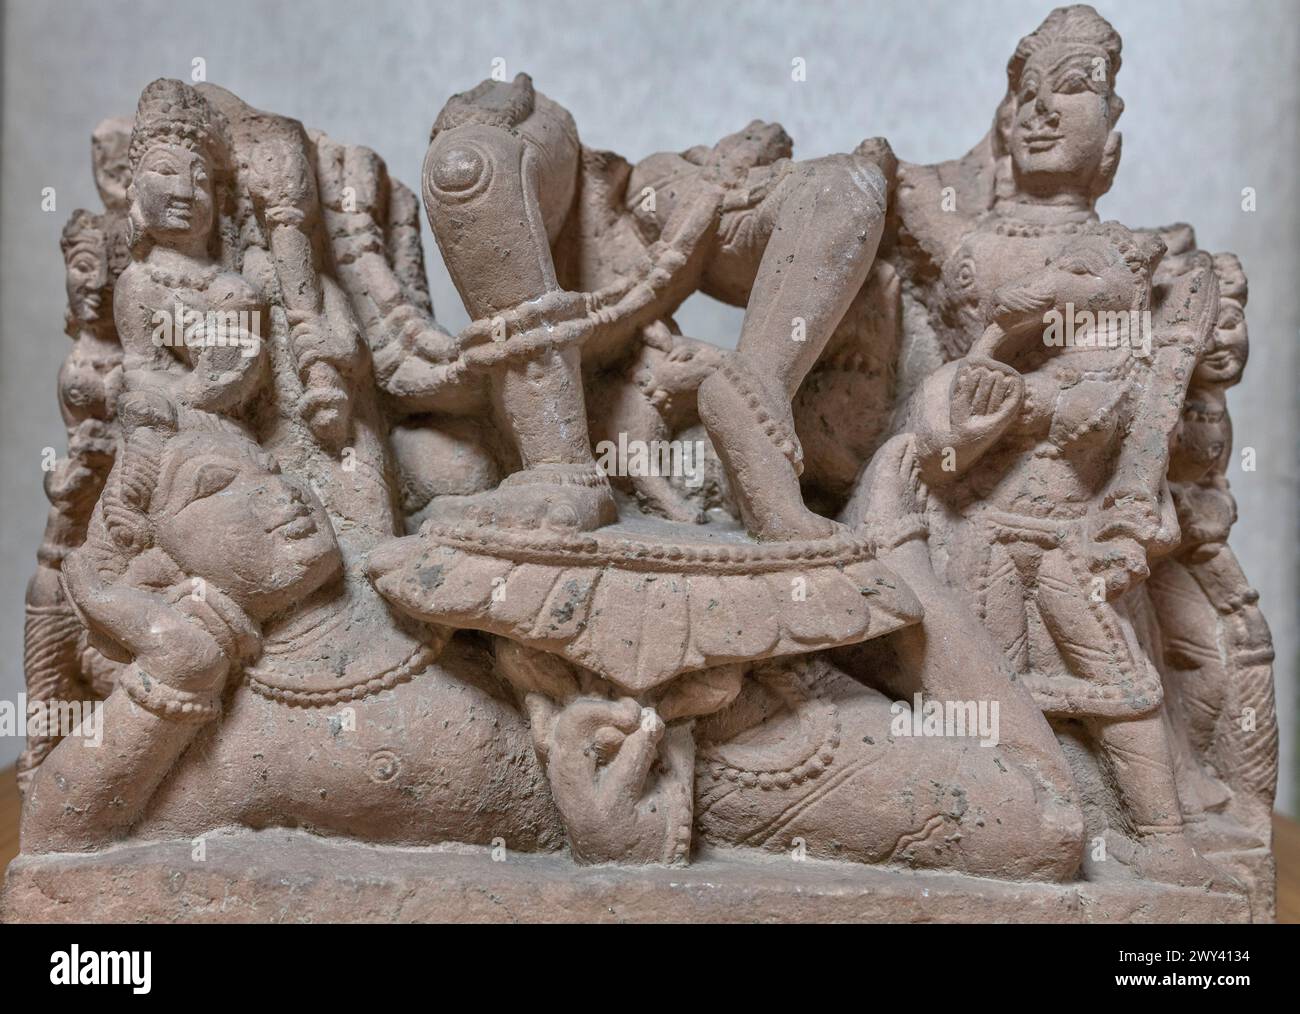 Veerbhadra, 11th century, Haryana, Museum and Art Gallery, Chandigarh, India Stock Photo